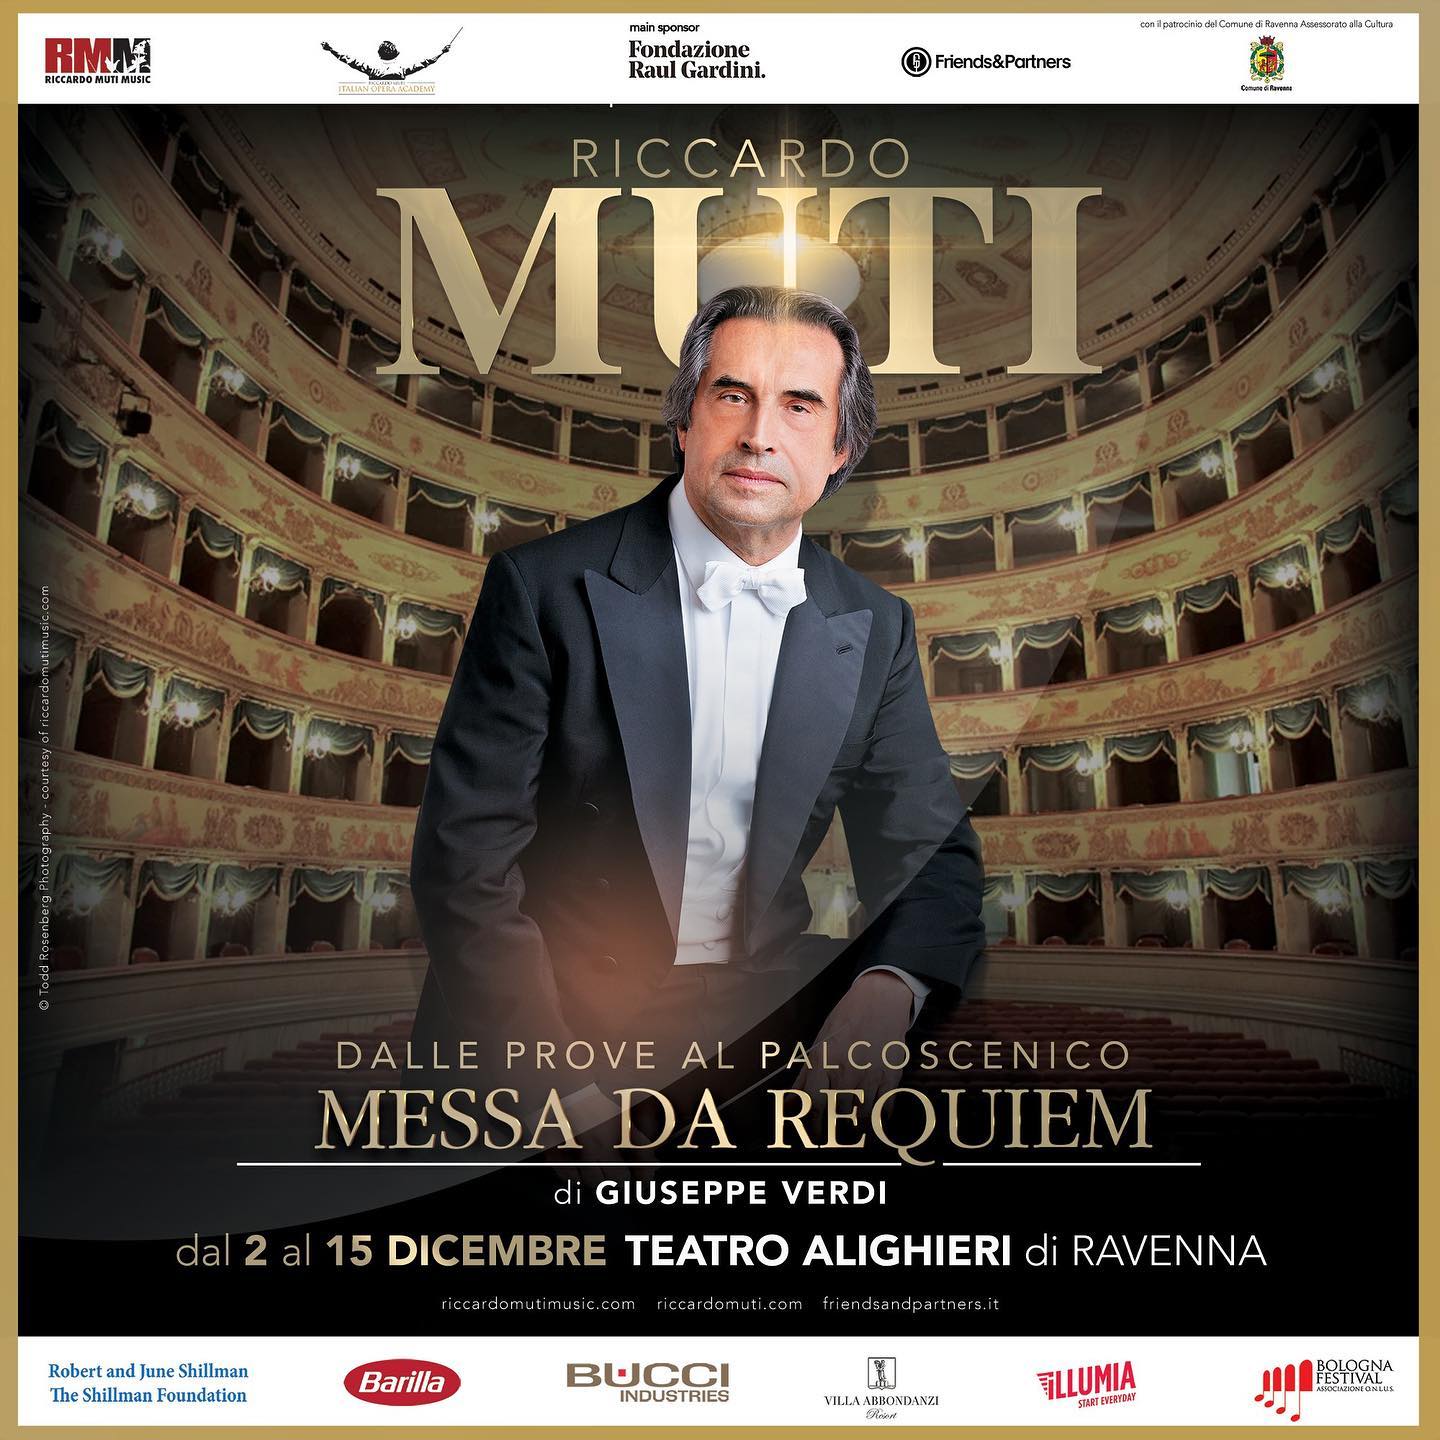 Dal 2 al 15 dicembre al Teatro Alighieri di Ravenna, il Maestro Riccardo Muti presenterà e dirigerà la Messa da Requiem di Giuseppe Verdi